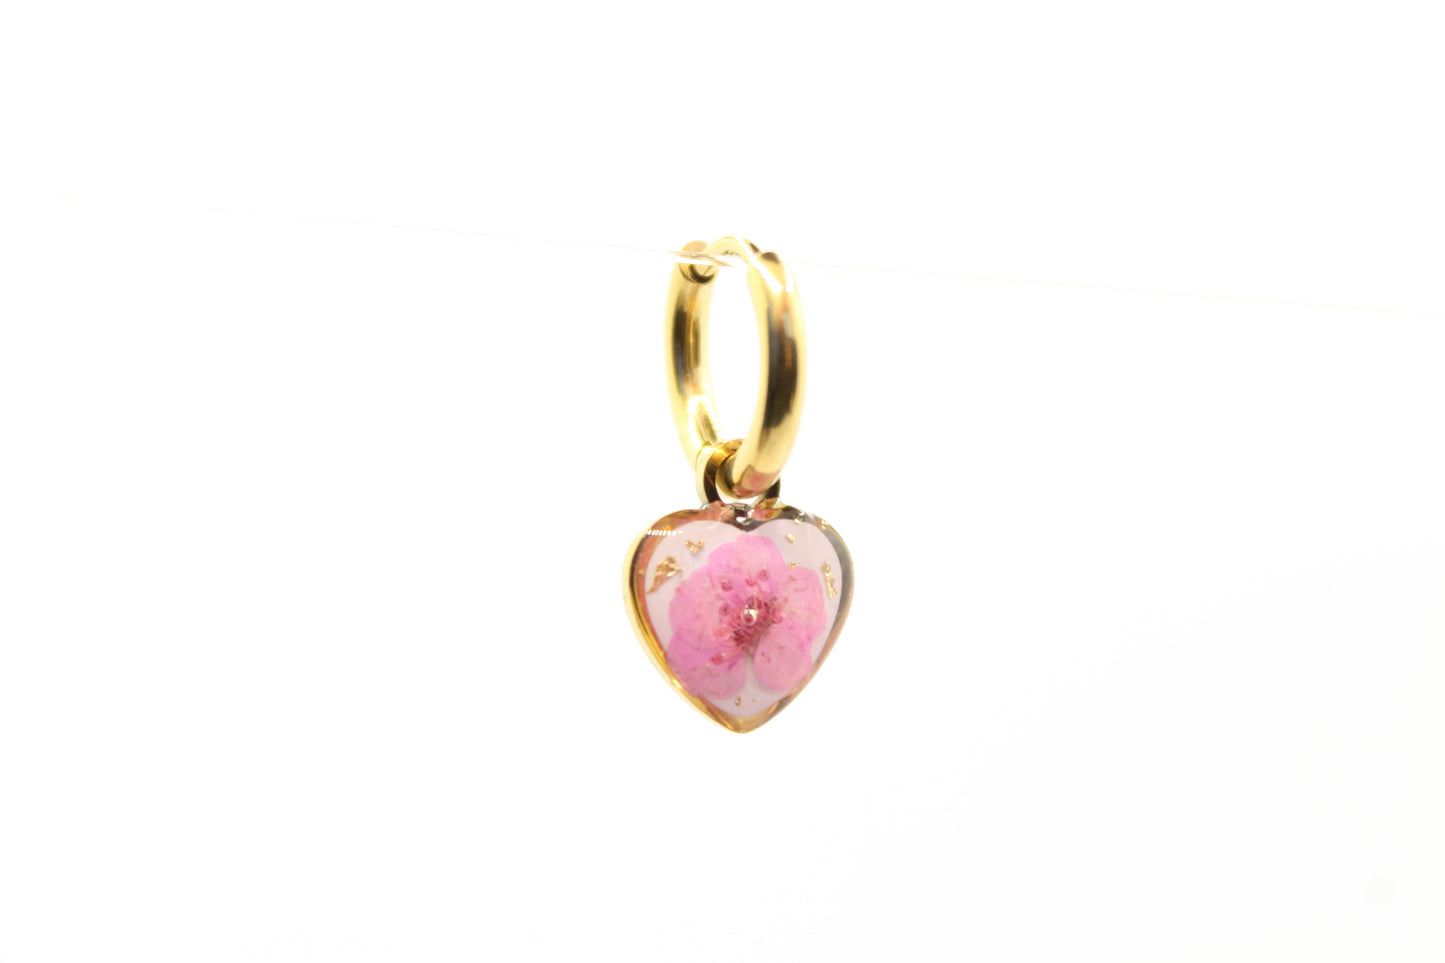 Un orecchino AMATI: Acciaio inox, ciondolo con resina e fiore selvatico rosa